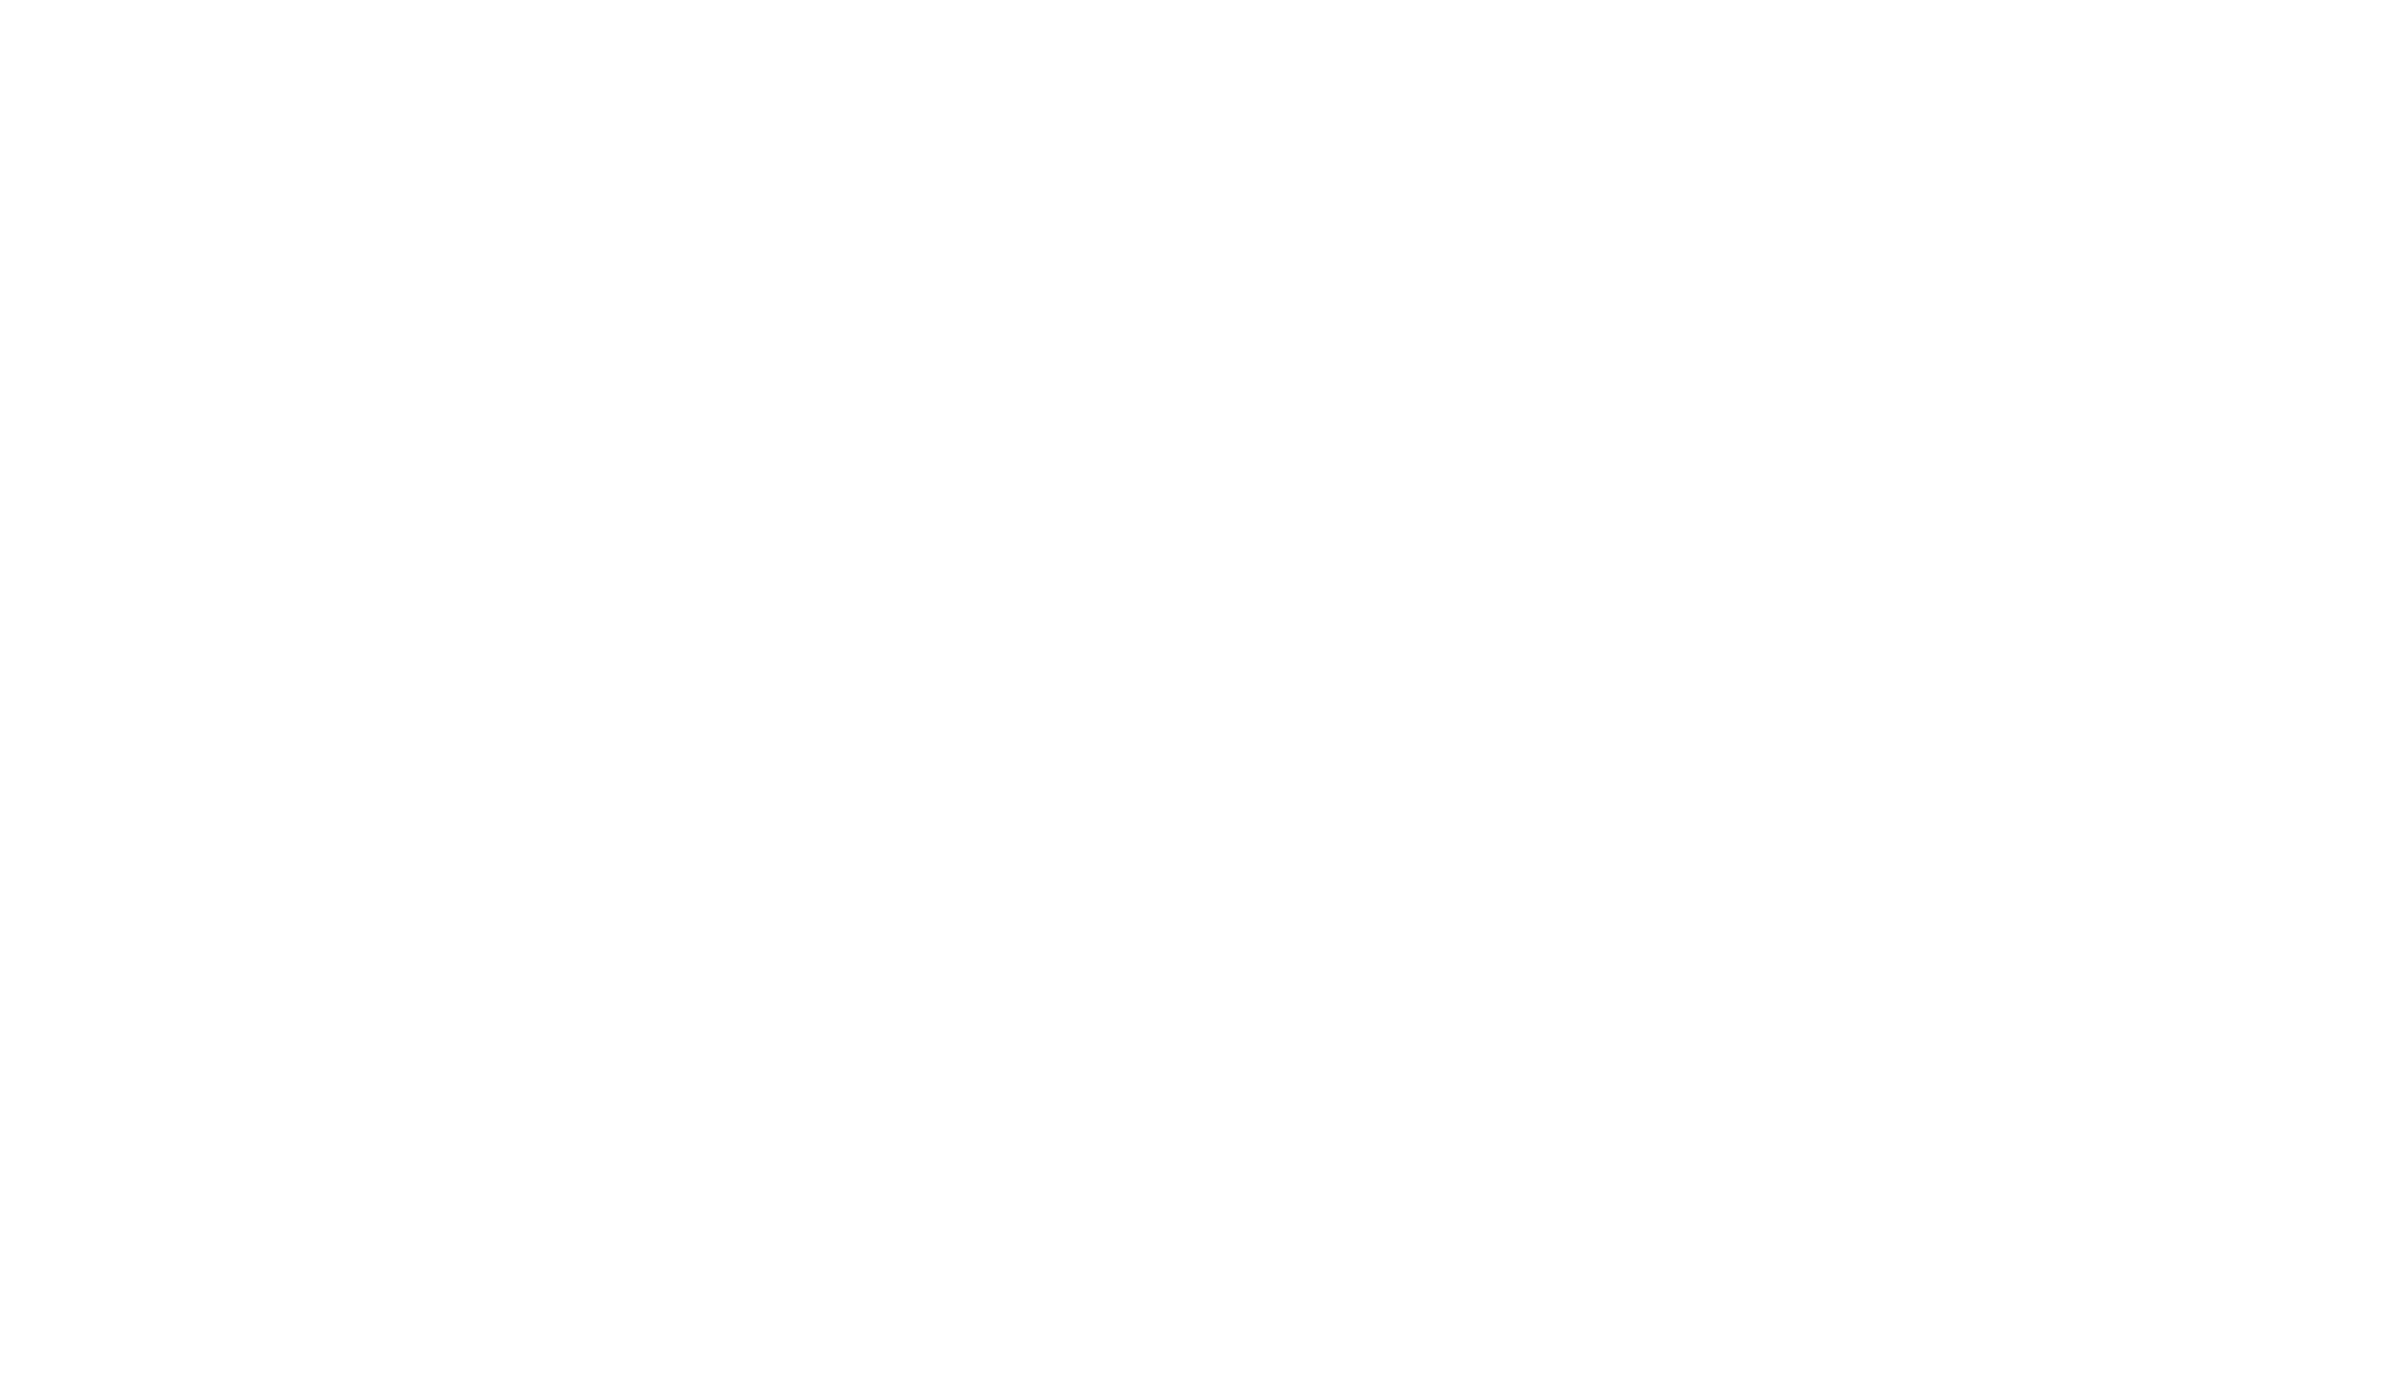 McKINLEY Logo